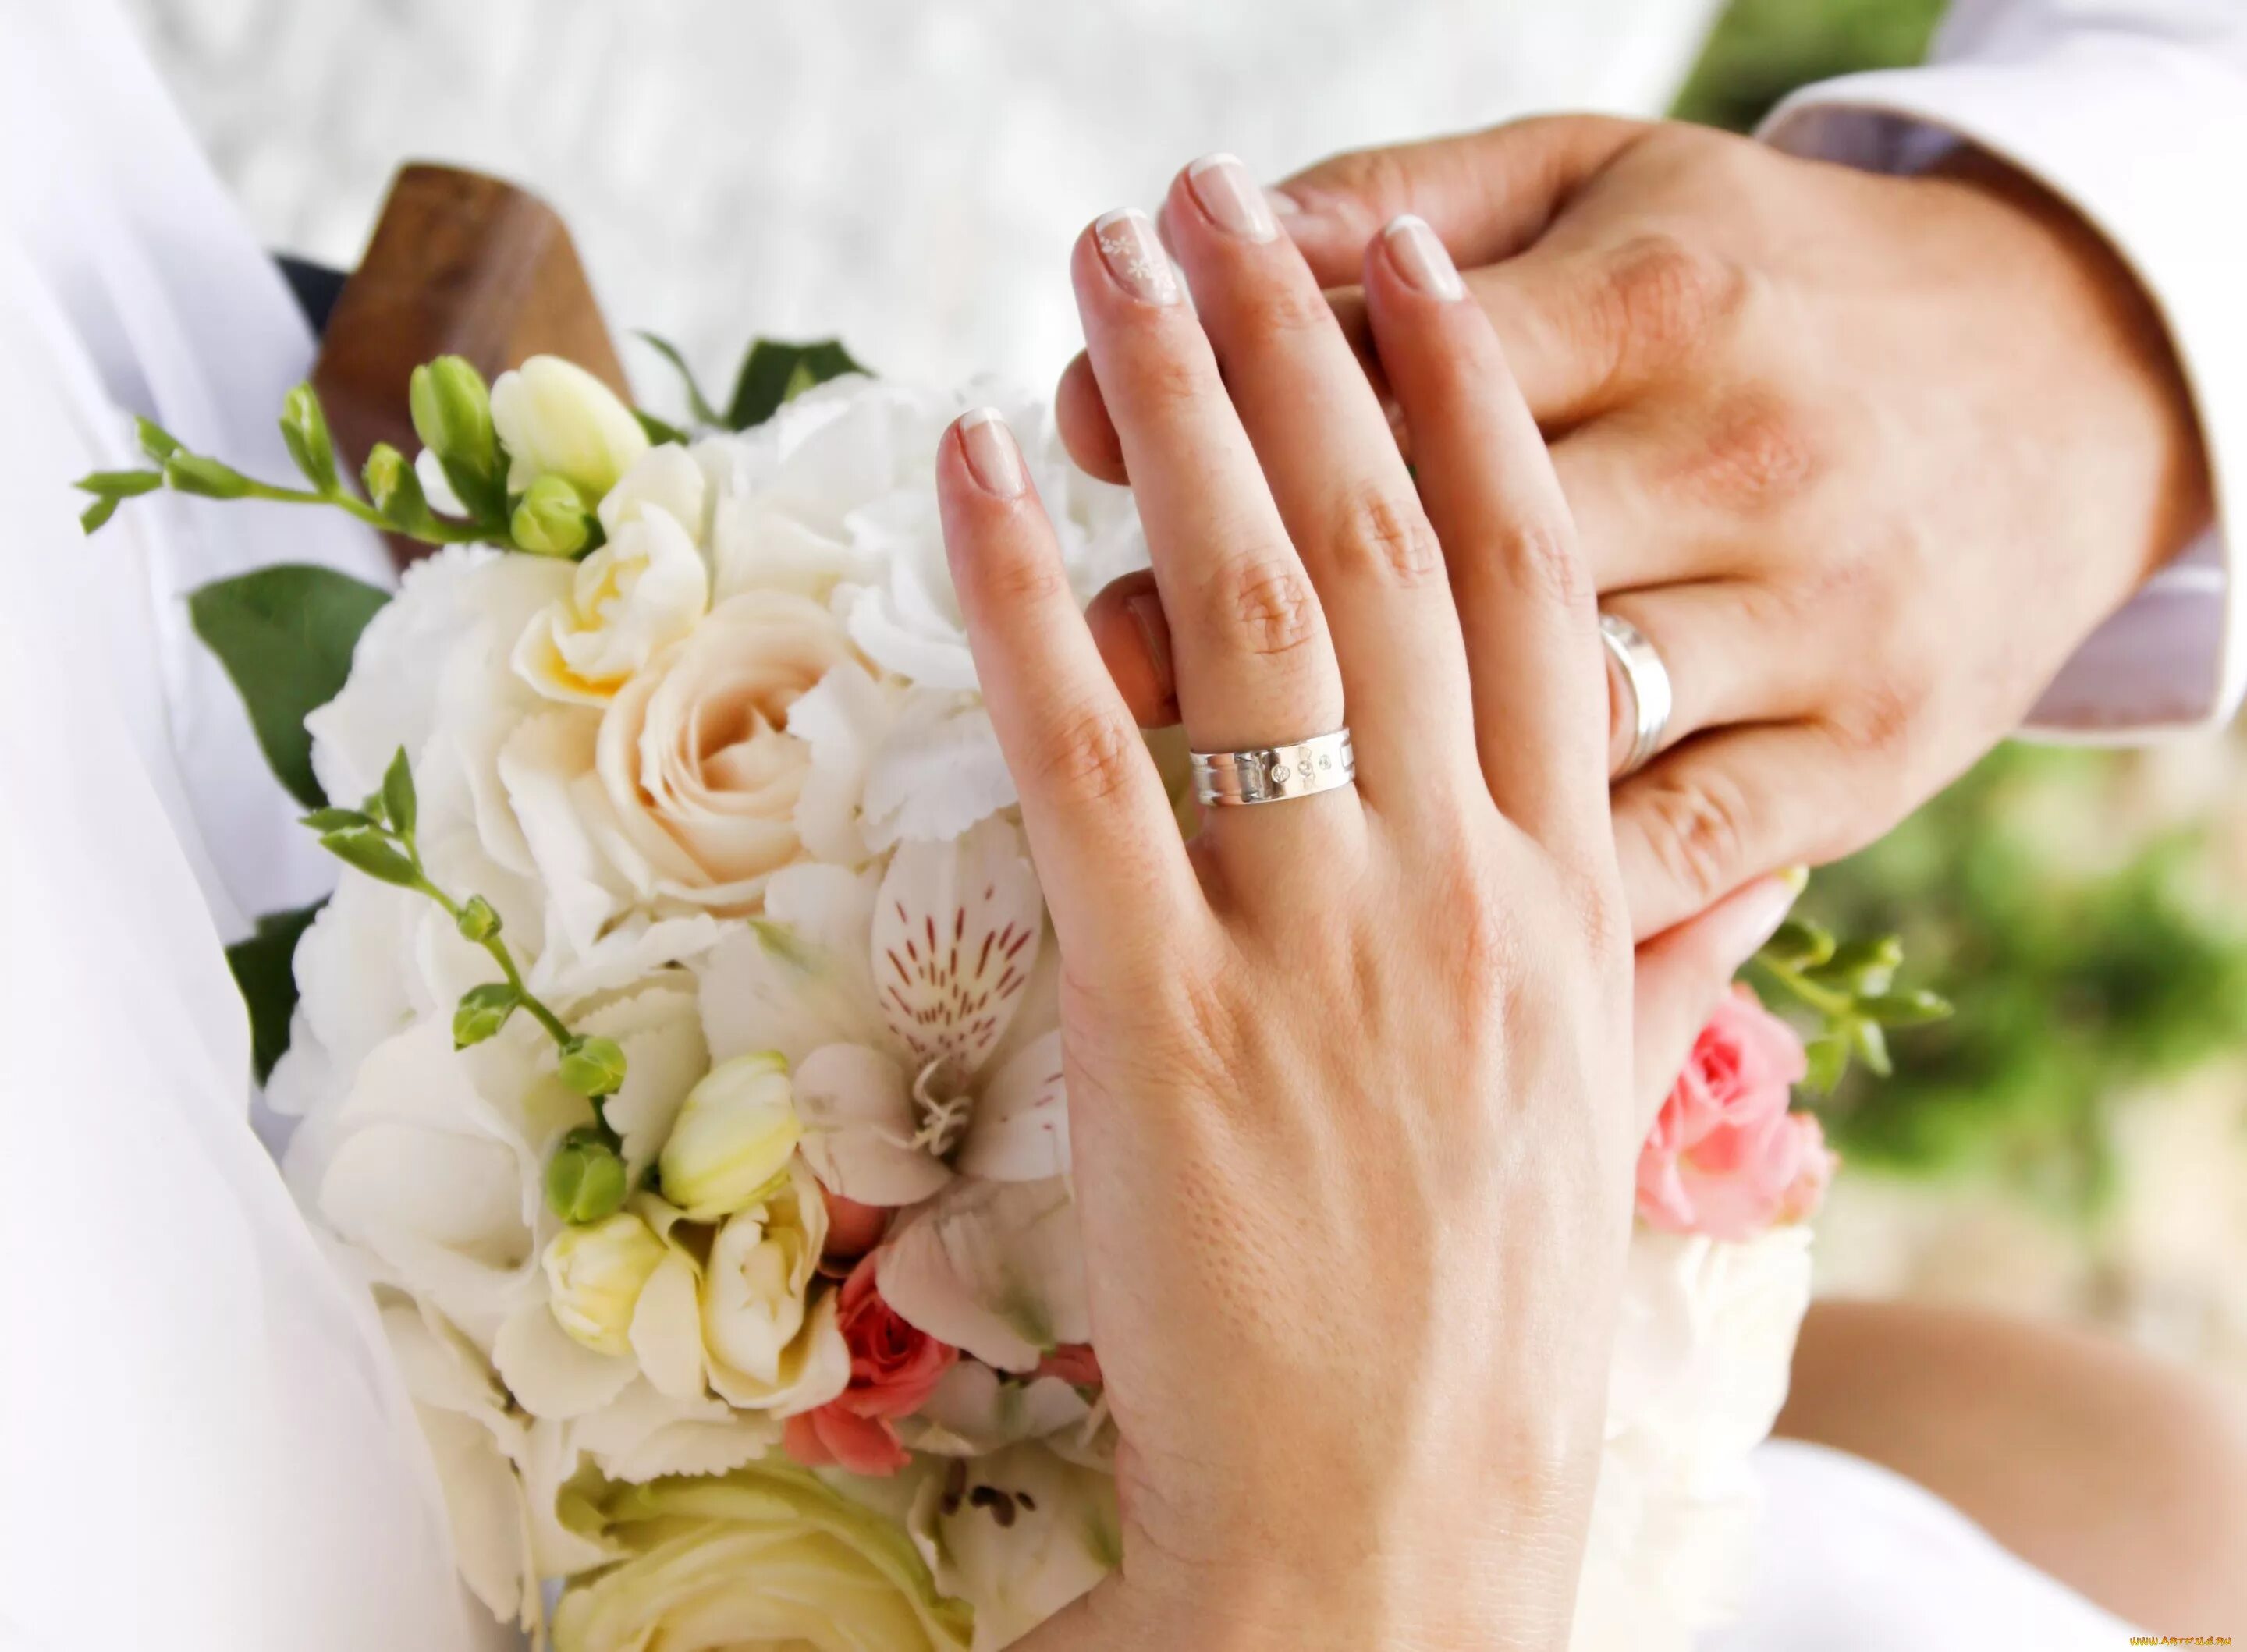 Кольцо брак на какой руке. Свадебные кольца на руках. Руки молодоженов с кольцами. Свадьба руки с кольцами. Свадебный букет и кольца.